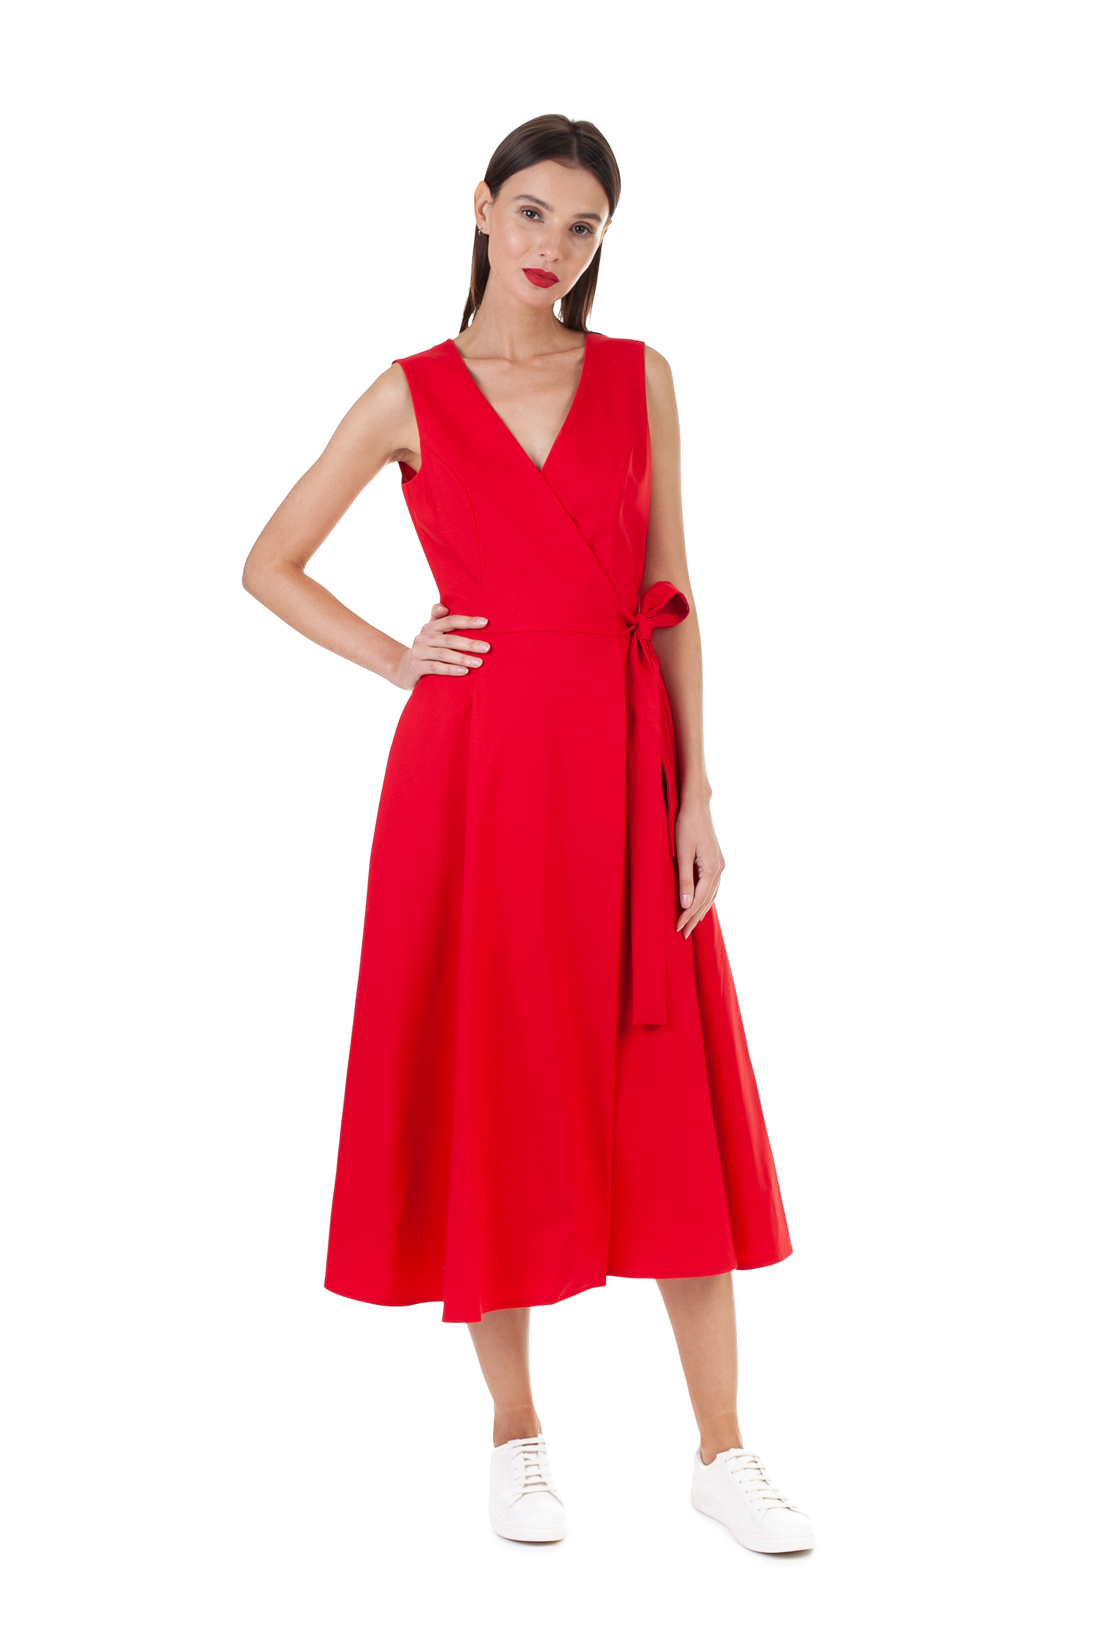 Платье без рукавов (арт. baon B458135), размер XS, цвет красный Платье без рукавов (арт. baon B458135) - фото 6